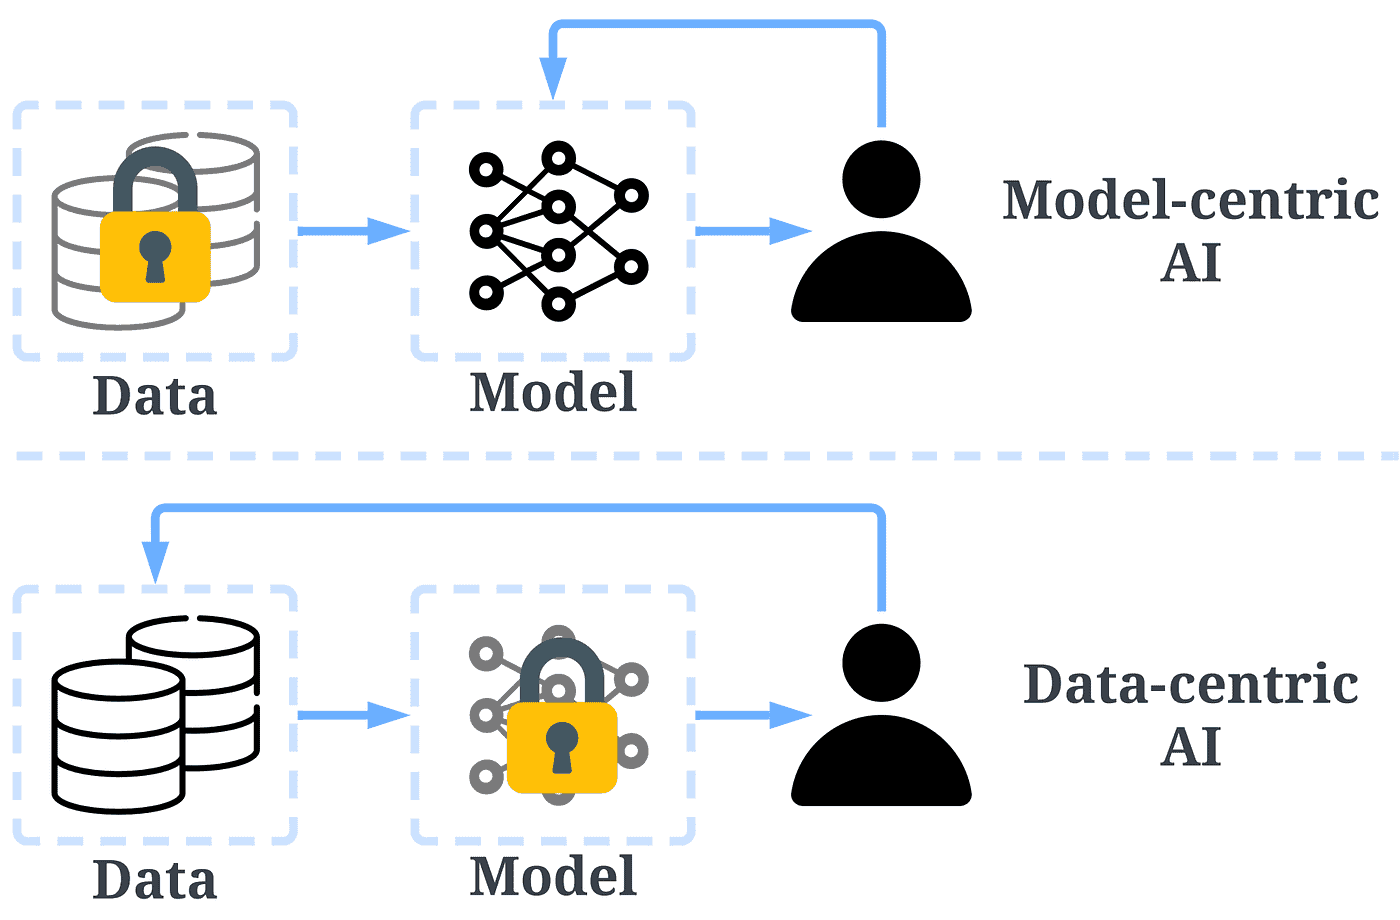 AI models